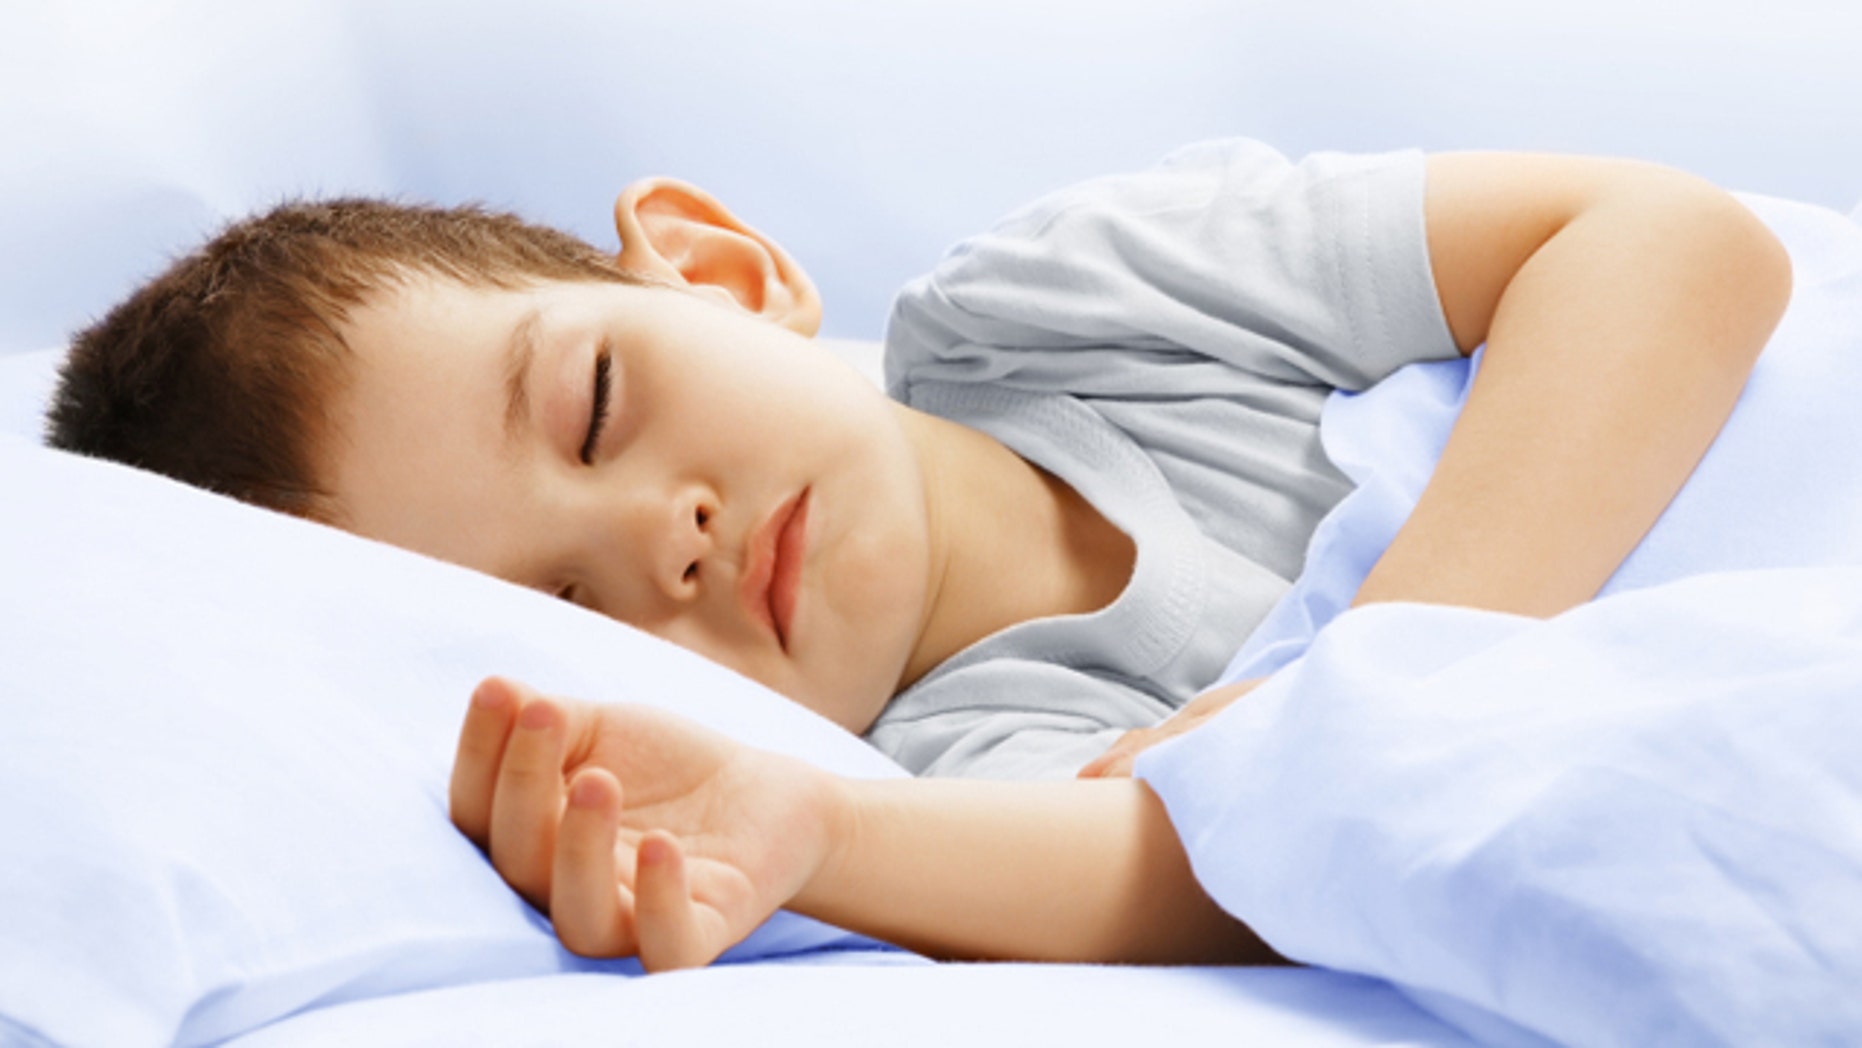 Melatonin pills for kids A safe sleep solution? Fox News